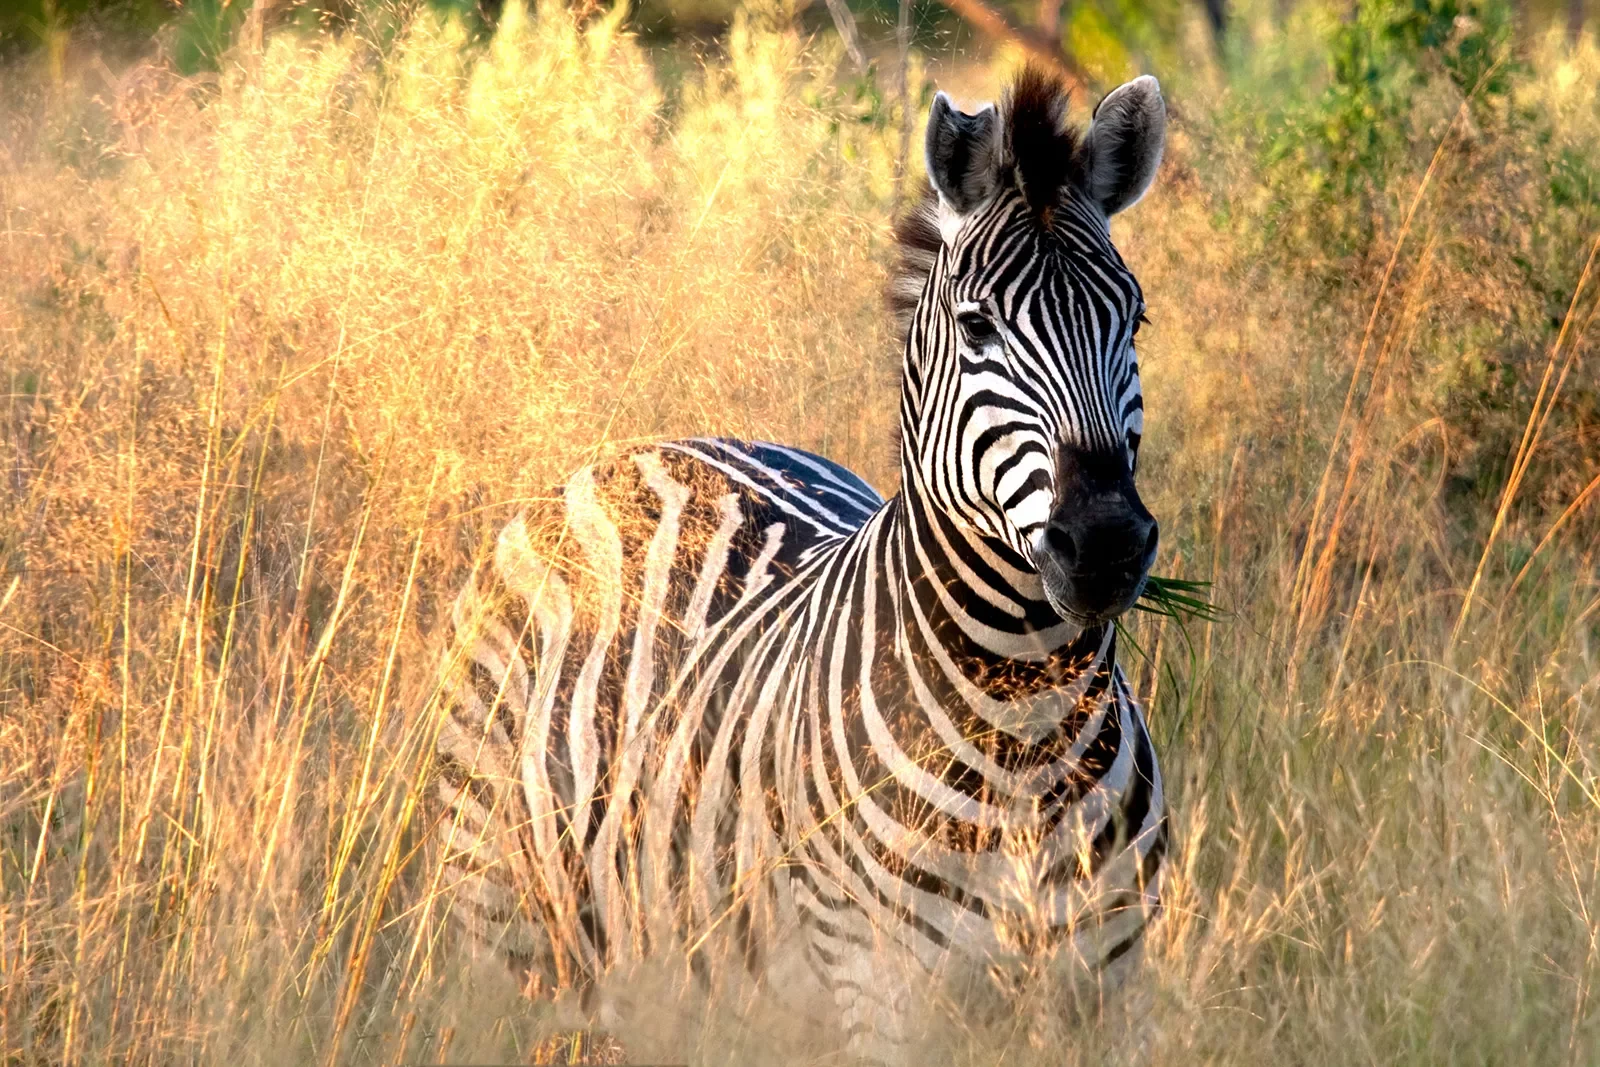 Zebra in tall grass